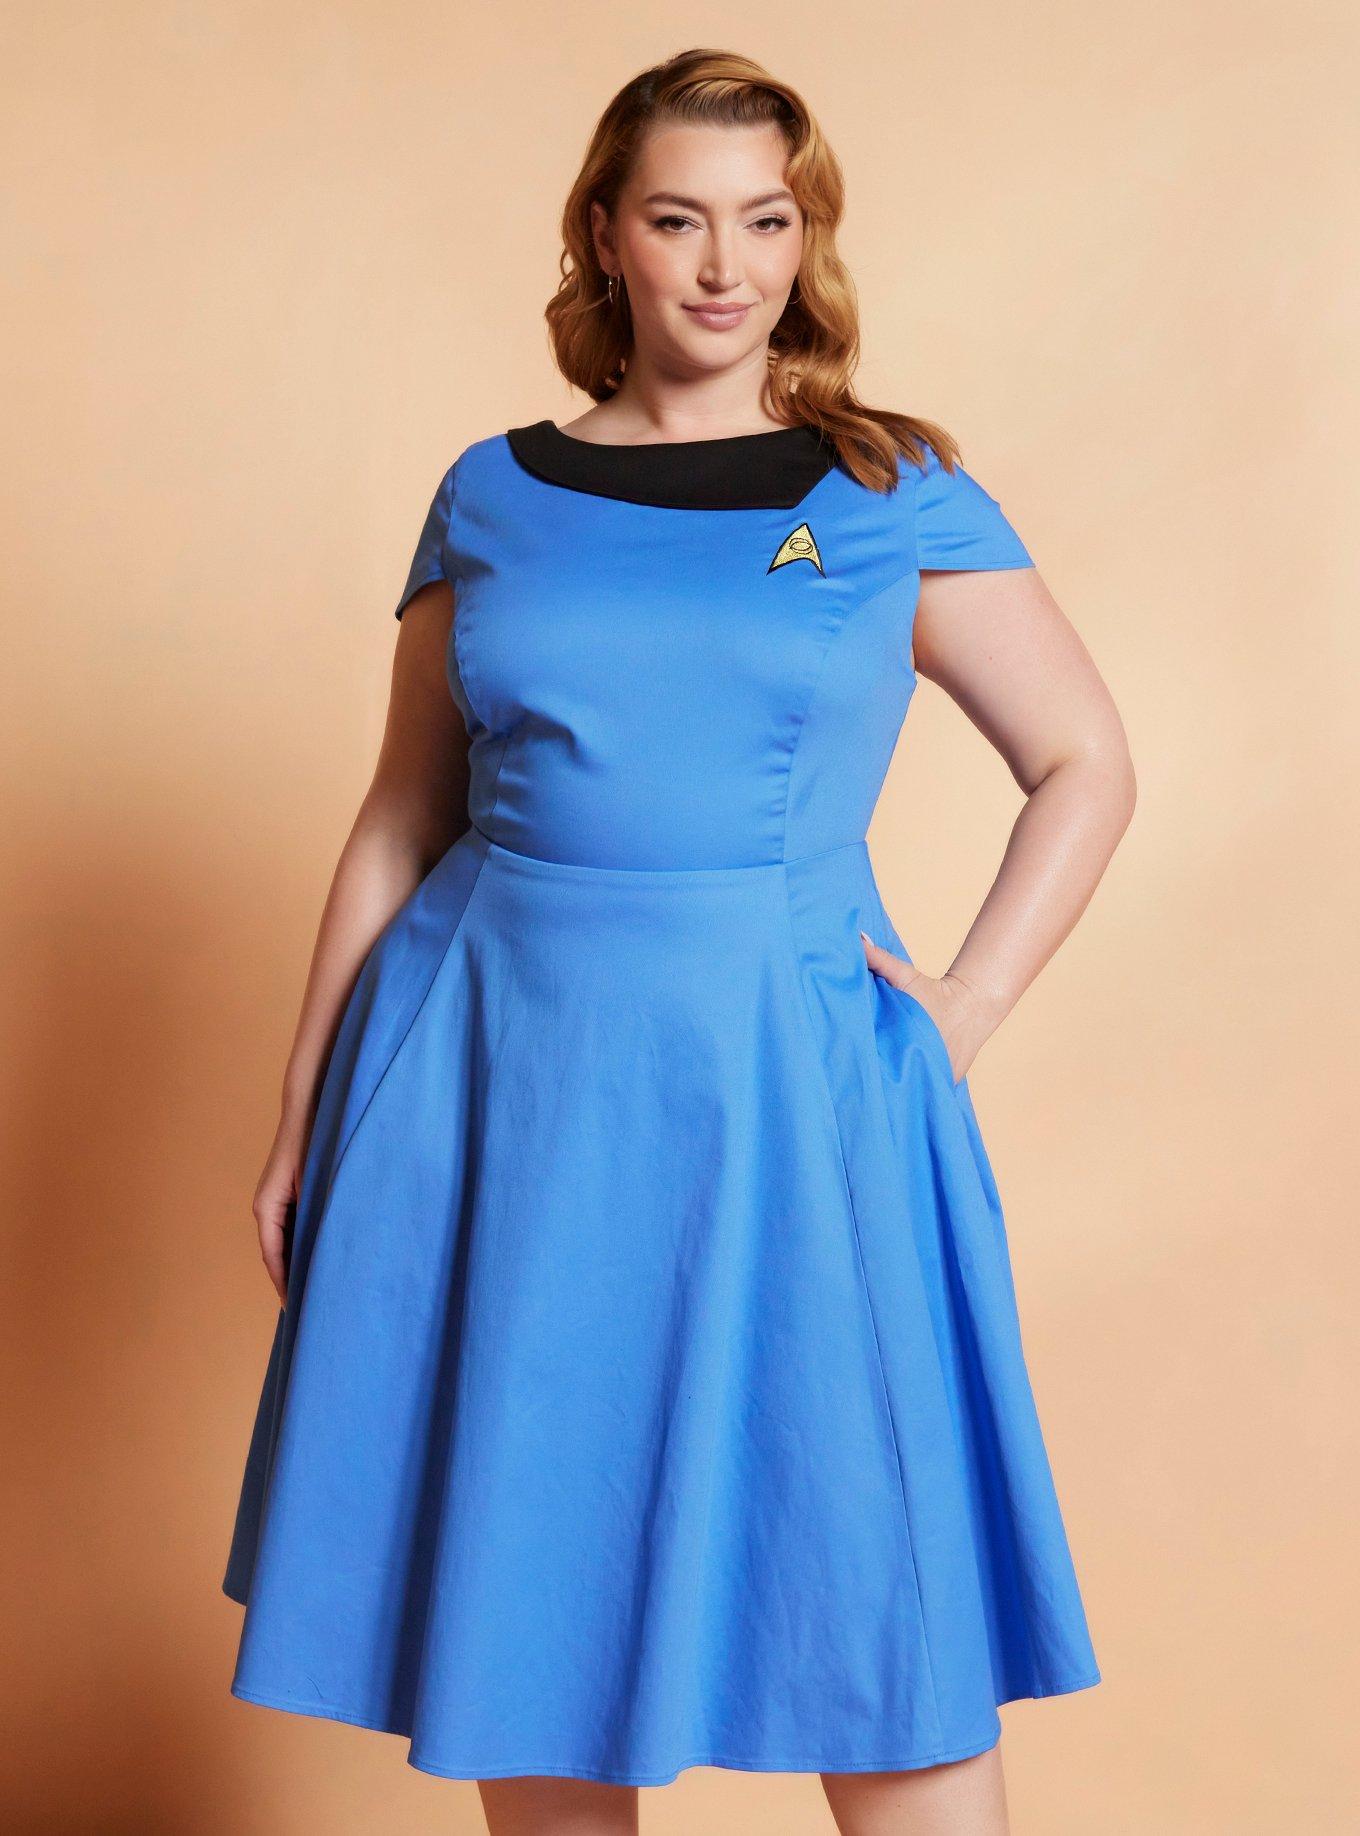 Her Universe Star Trek Blue Uniform Retro Dress Plus Size Her Universe Exclusive, BLUE, hi-res